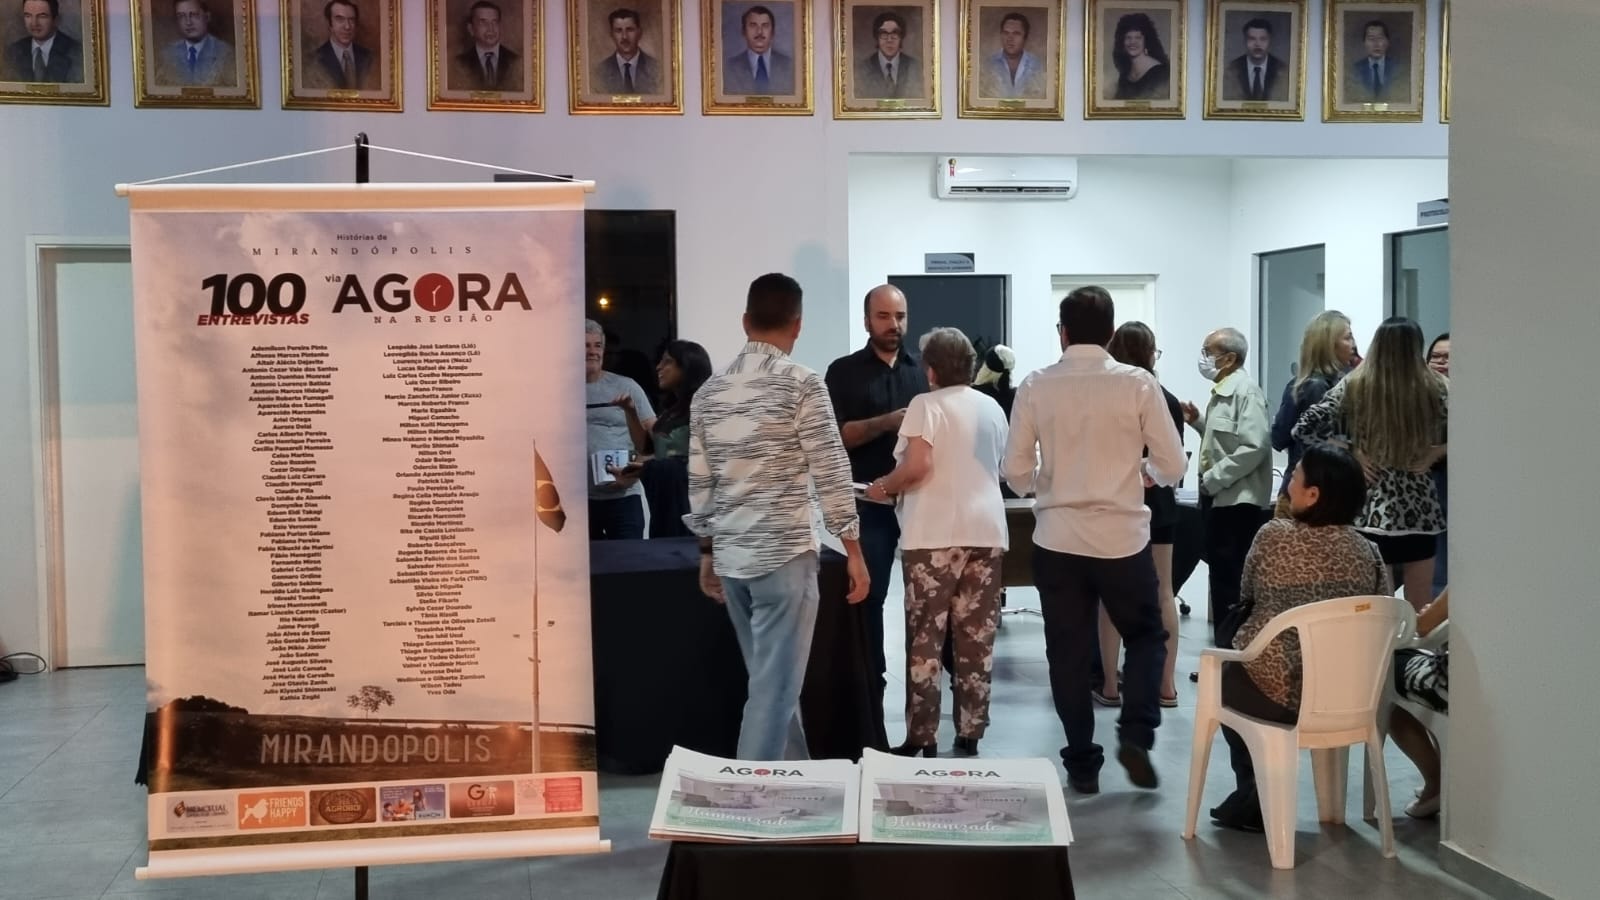 Histórias de Mirandópolis: Eduardo Mustafa lança livro com 100 entrevistas de personalidades locais